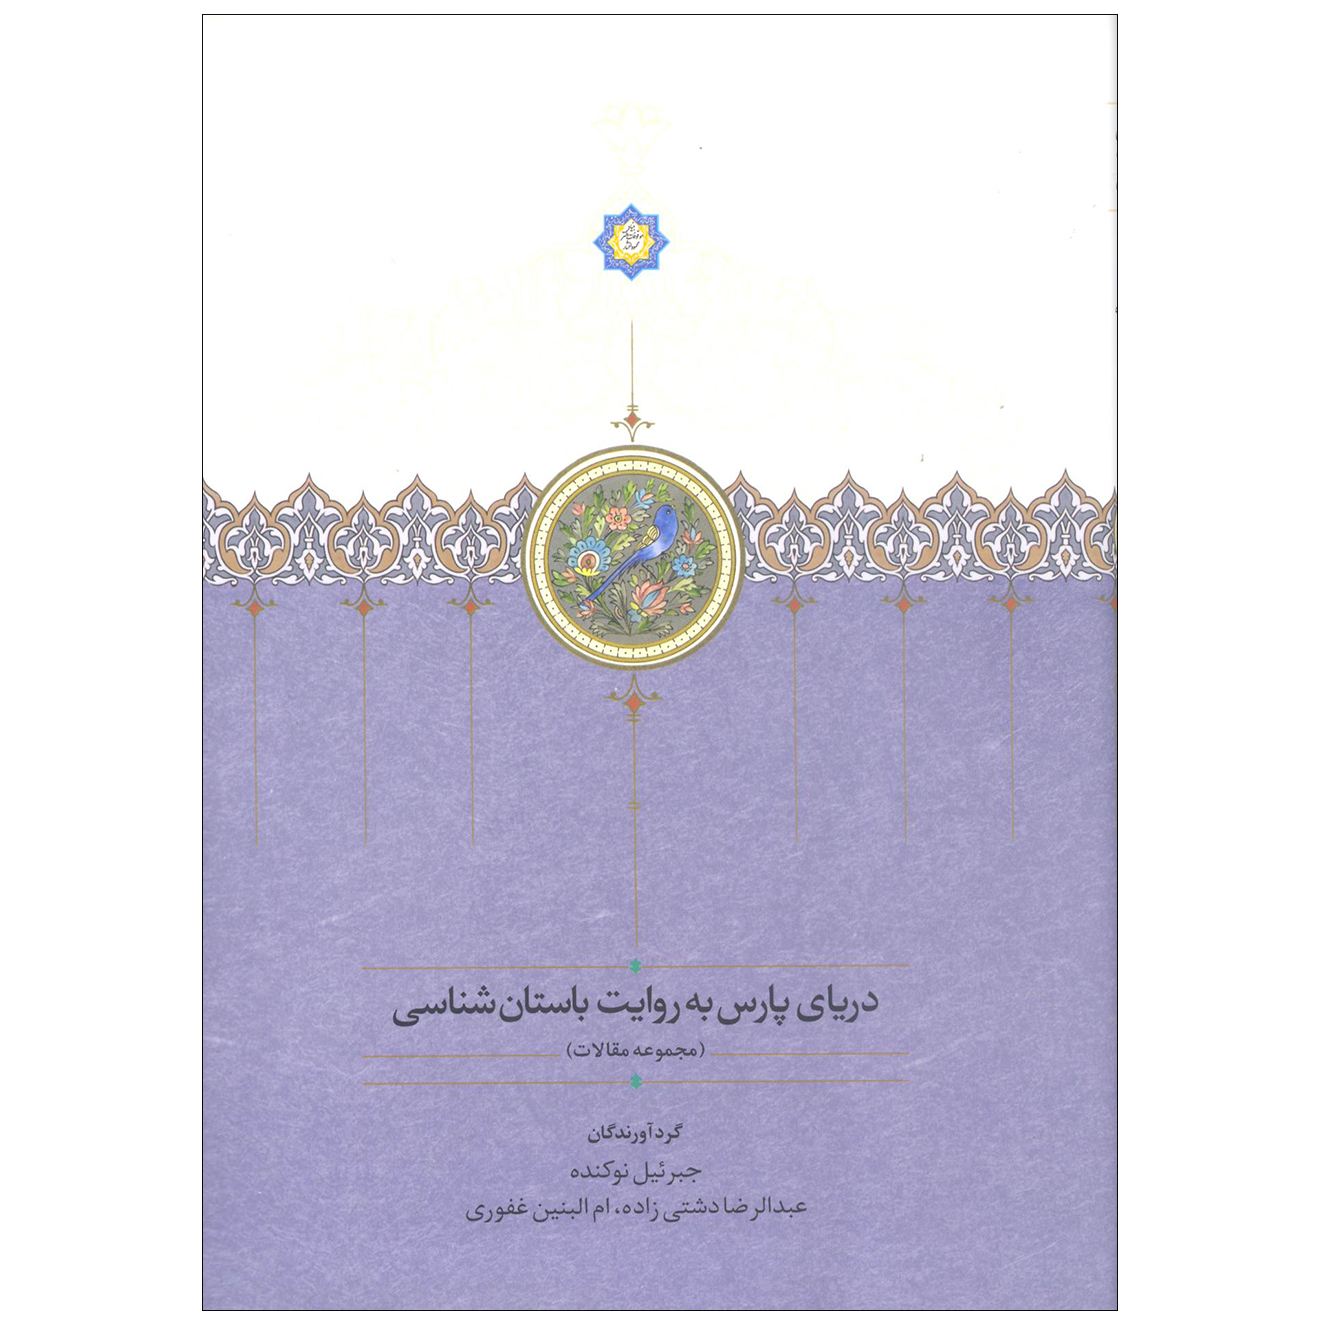  کتاب دریای پارس به روایت باستان شناسی اثر جمعی از نویسندگان انتشارات سخن